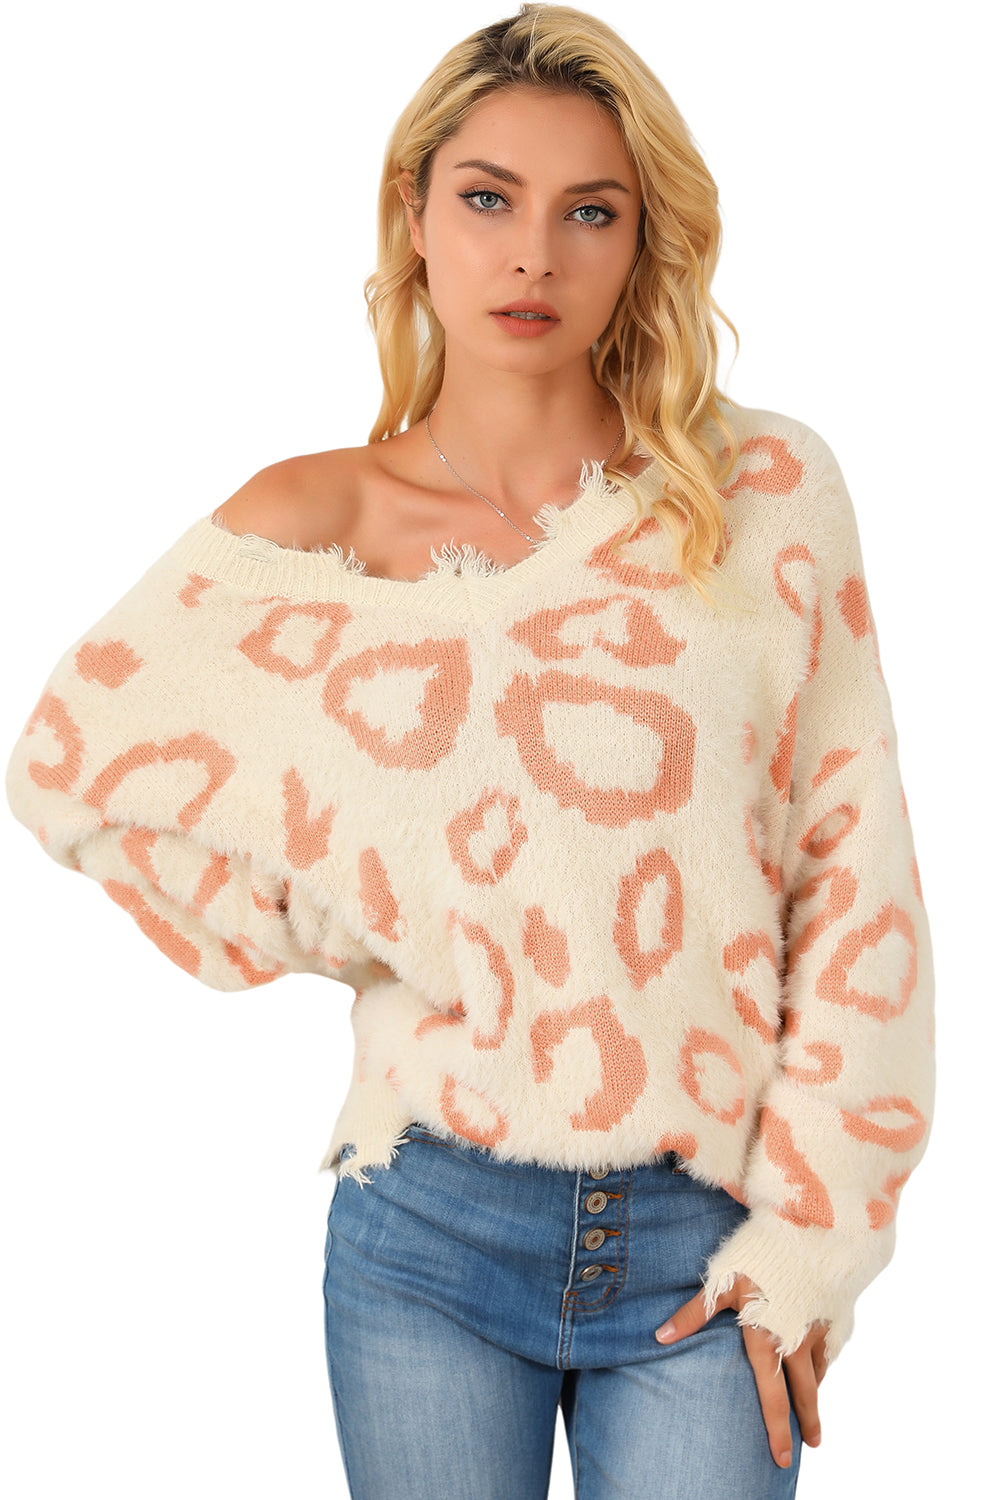 Nejasen pulover z leopardjim živalskim vzorcem